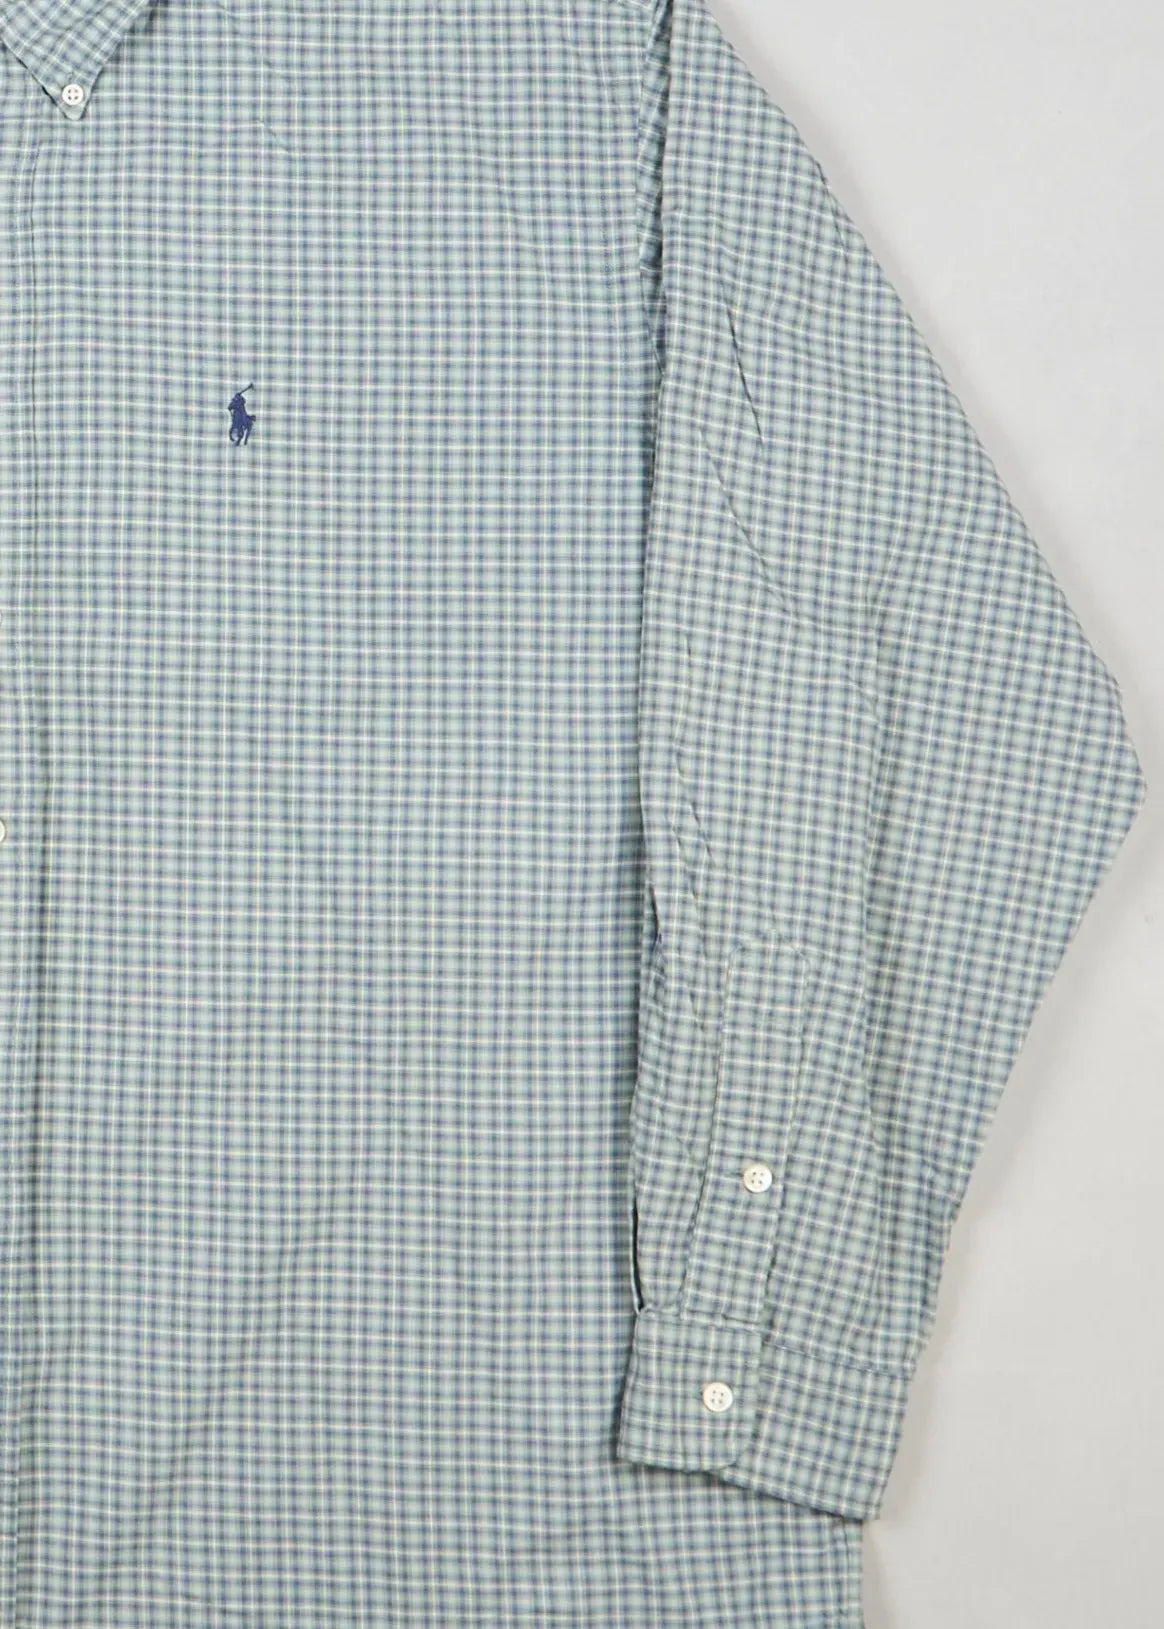 Ralph Lauren - Shirt (XL) Right